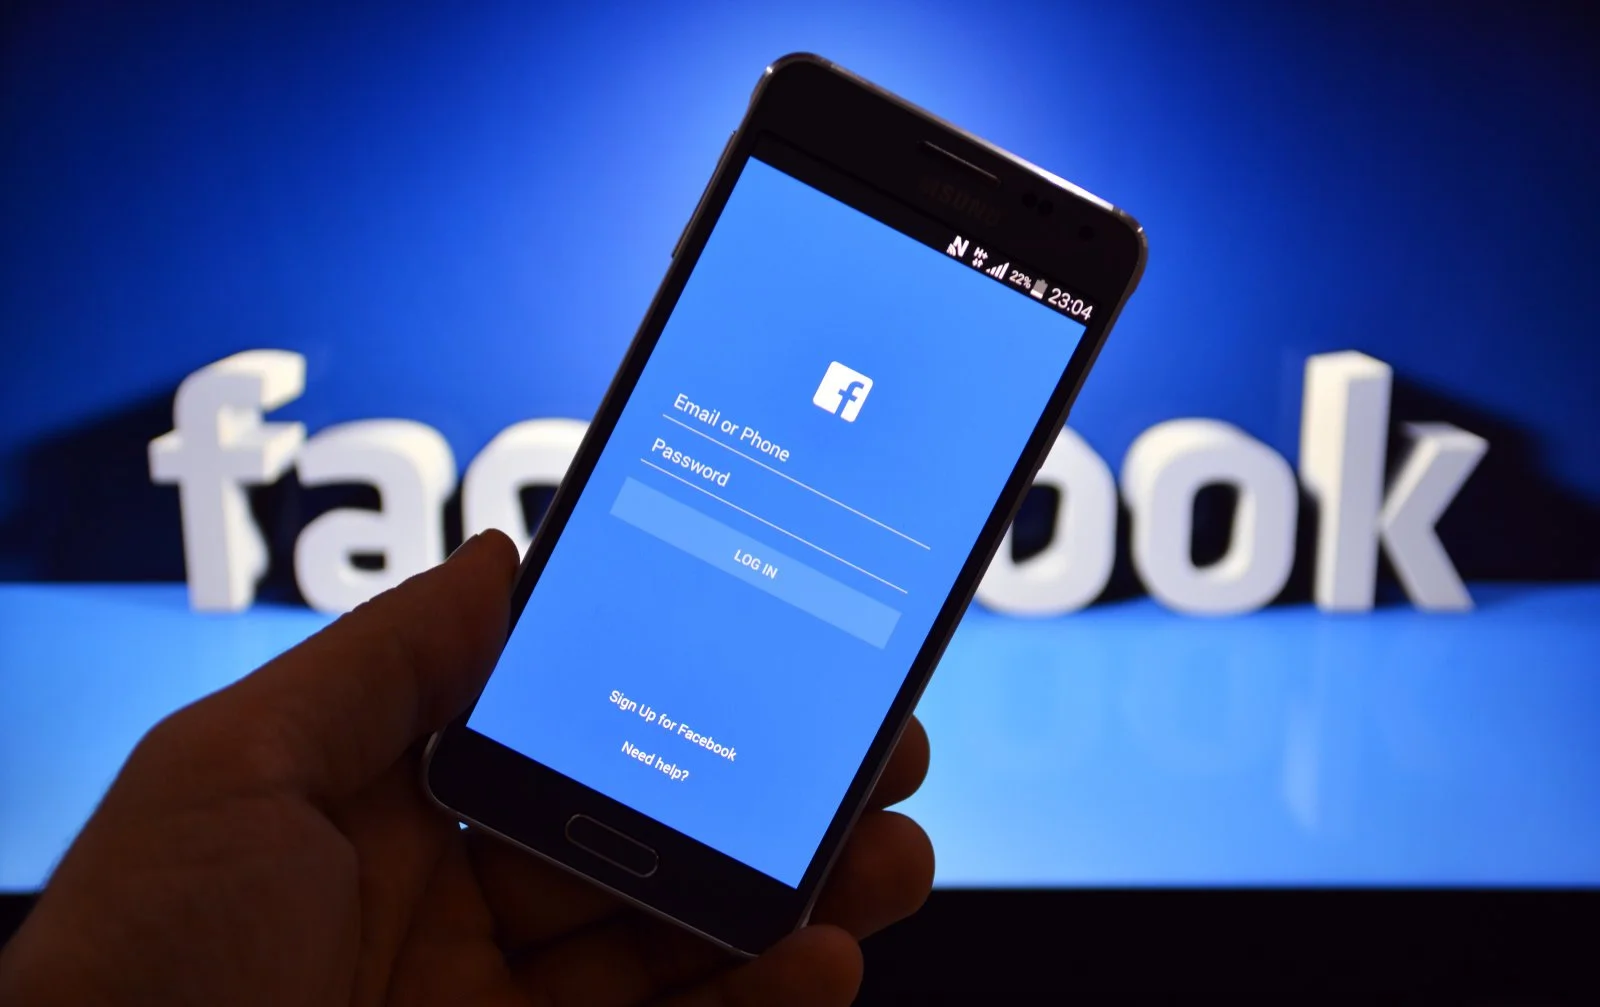 На страже интернета: Роскомнадзор хочет заблокировать Facebook в 2018 году - фото 1